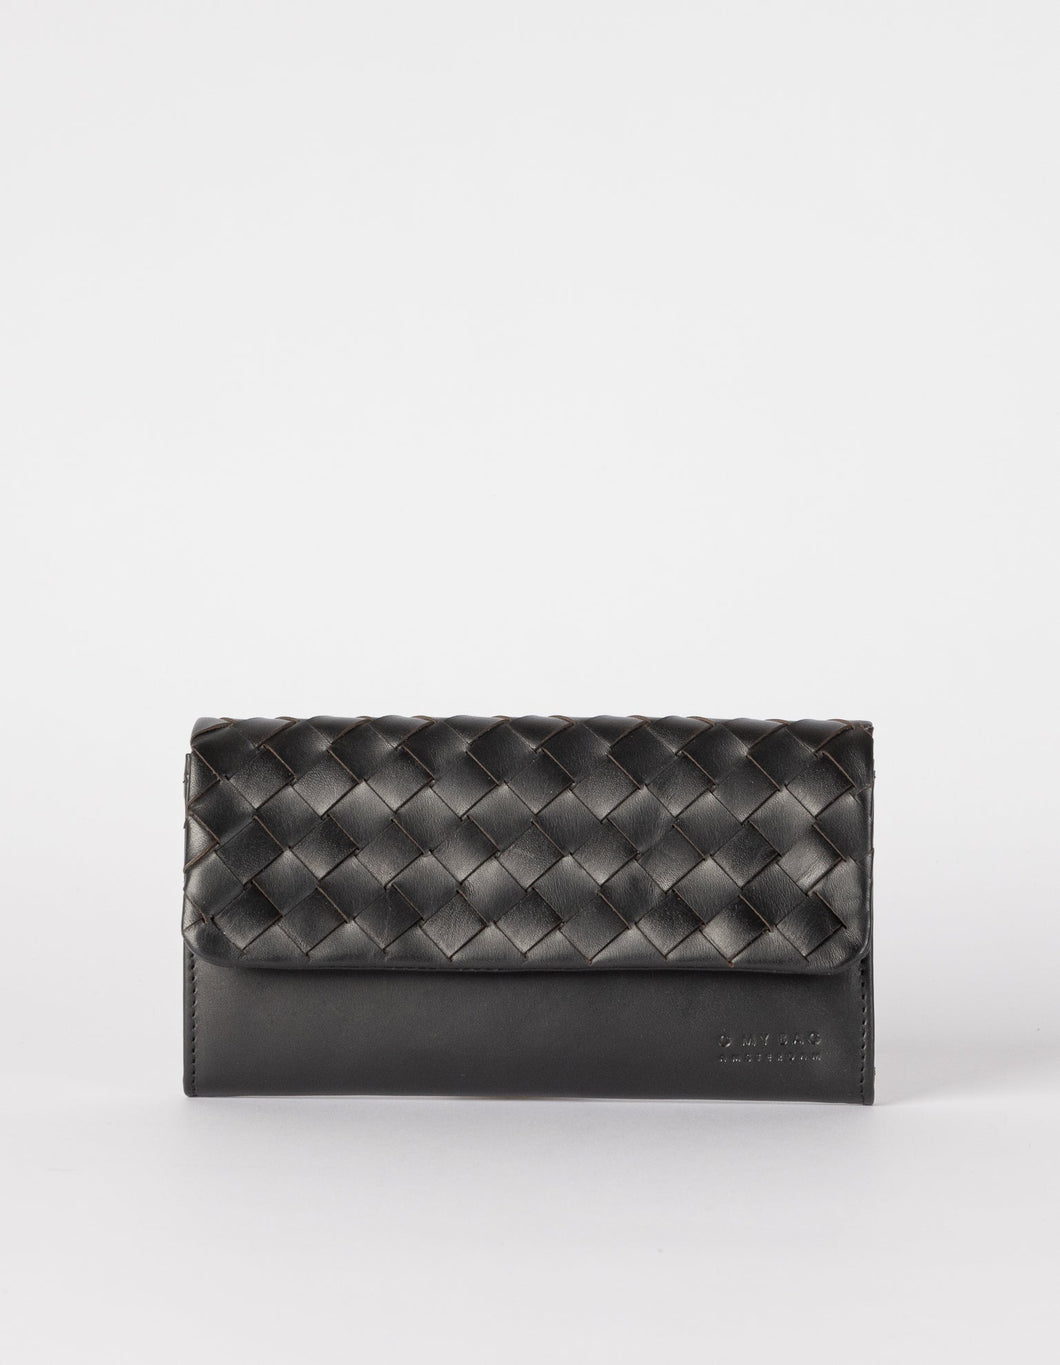 Pau's Pouch | Black Woven Leather